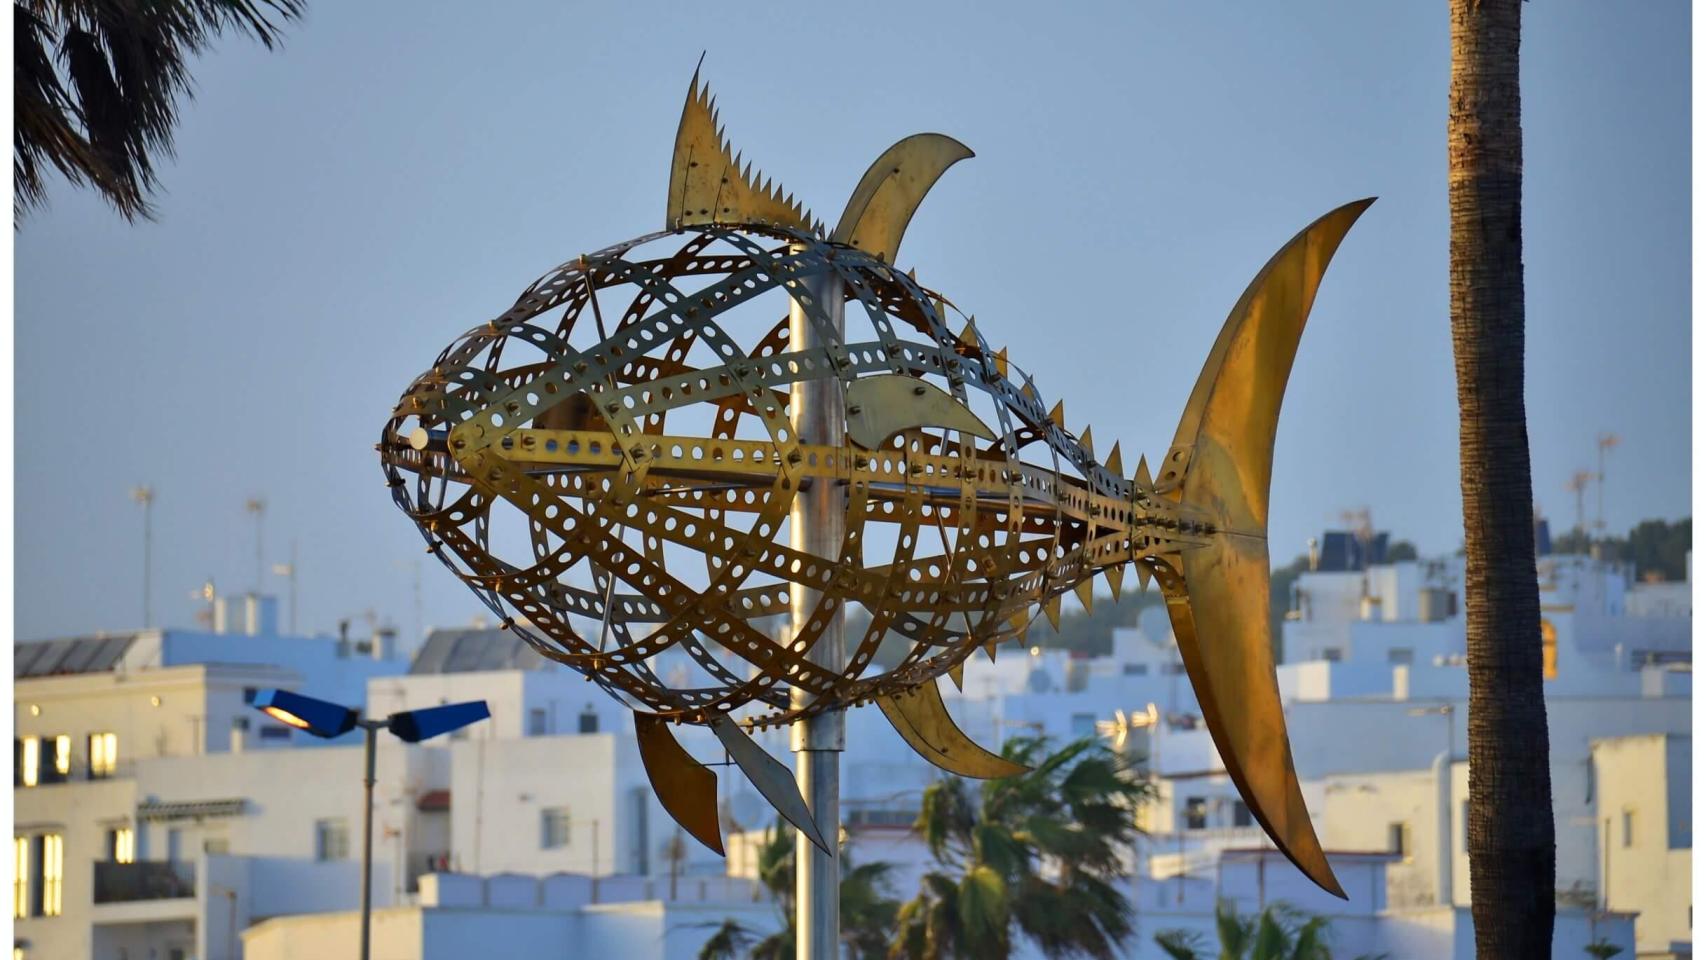 El atún tiene un monumento en este pueblo de la provincia de Cádiz.